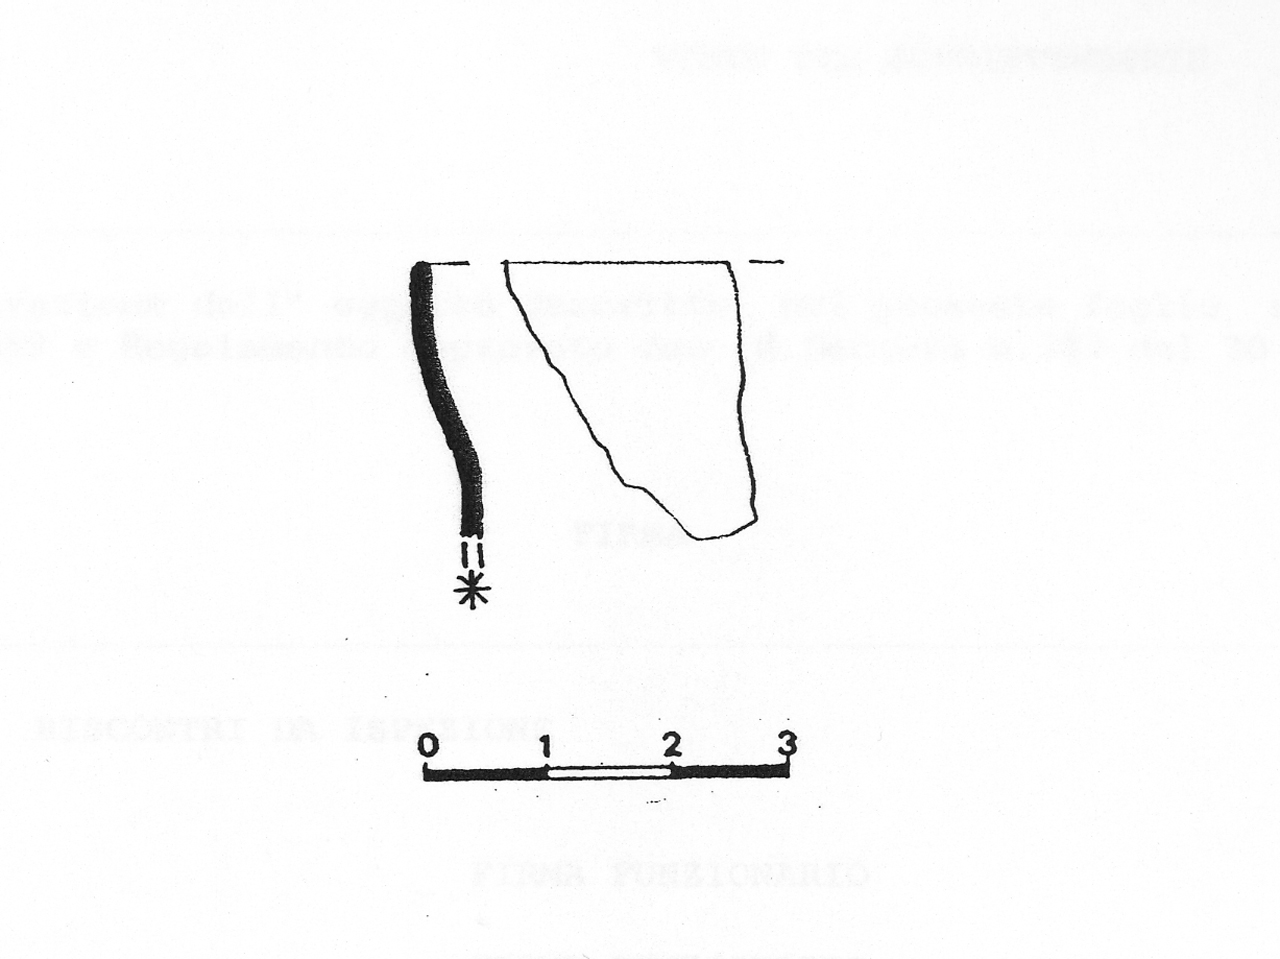 orlo di calice - Locale romanizzato (V-VII d.C)